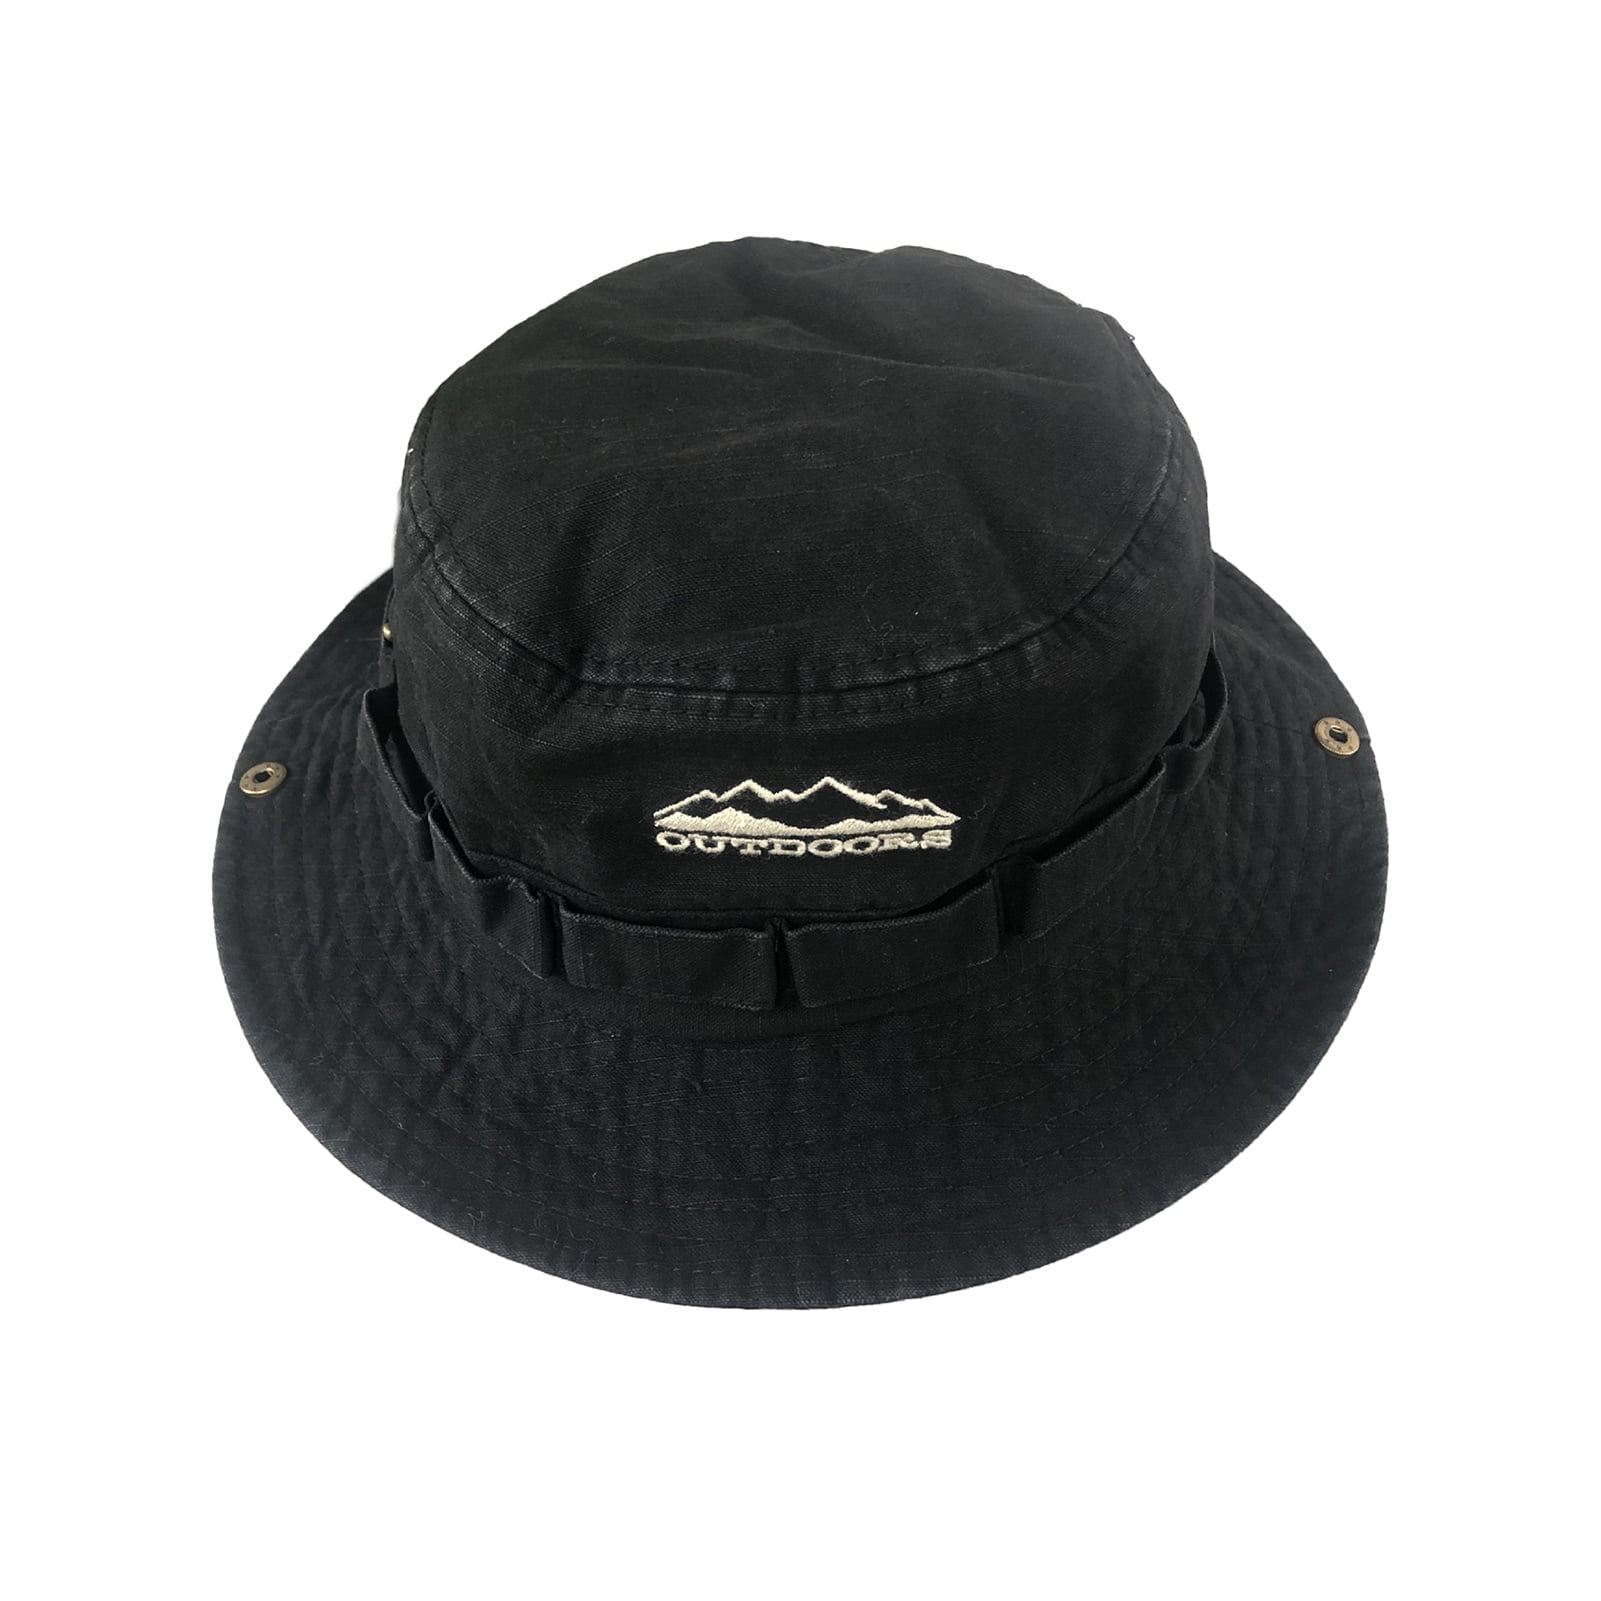 Sayre Enterprises Inc. BDU Hat Shaper in Black | Made in U.S.A. | LT000605